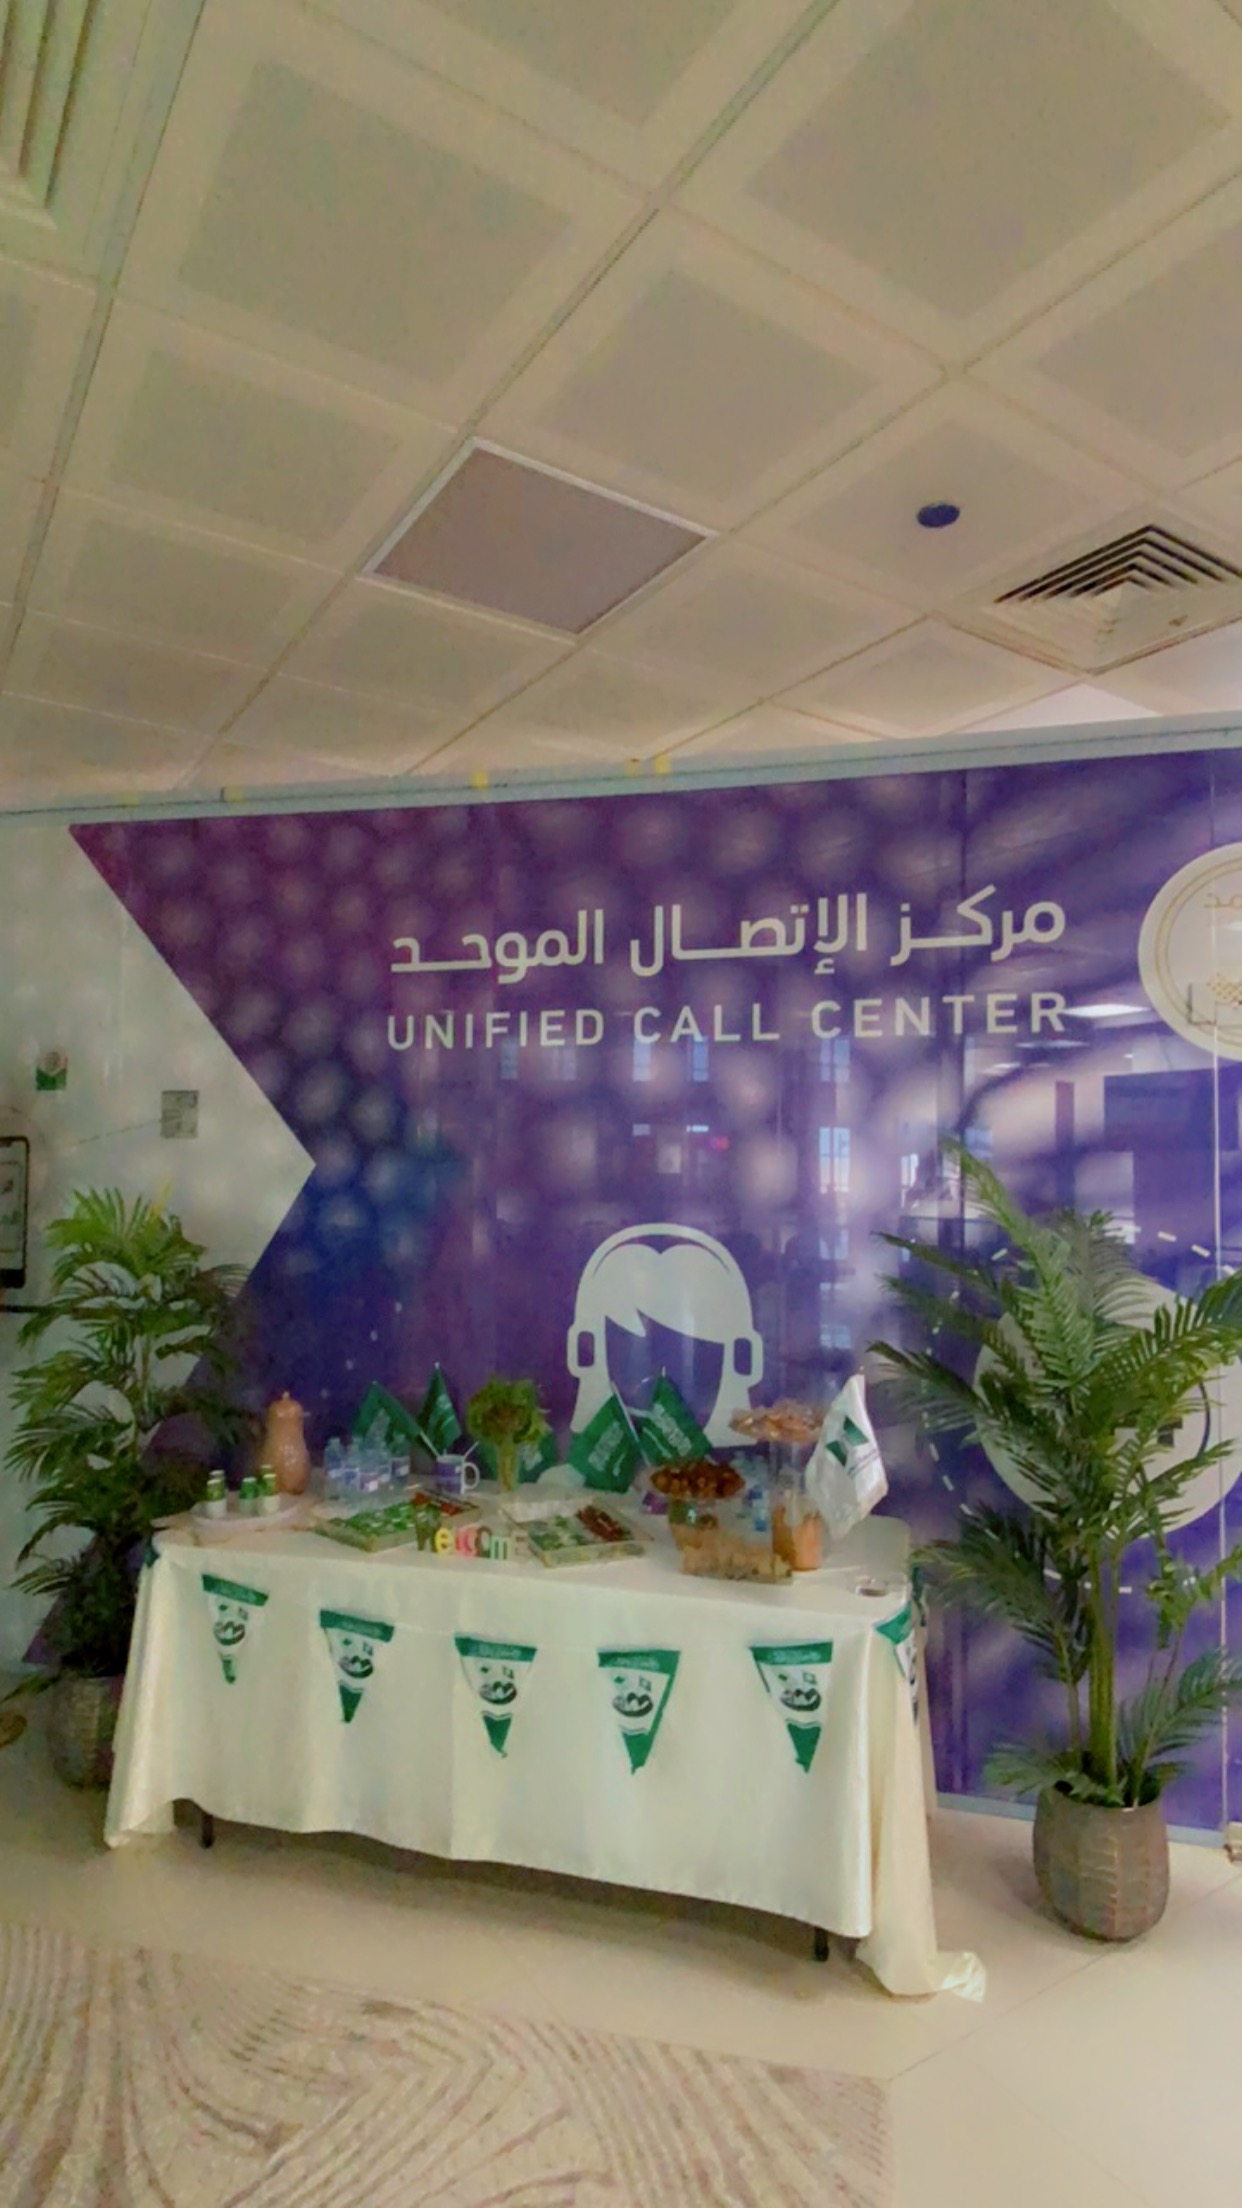 ​في يوم مميز شارك مركز الاتصال الموحد / جامعة تبوك ب اليوم الوطني السعودي 93  بحضور عدداً من منسوبات الكلية والطالبات .